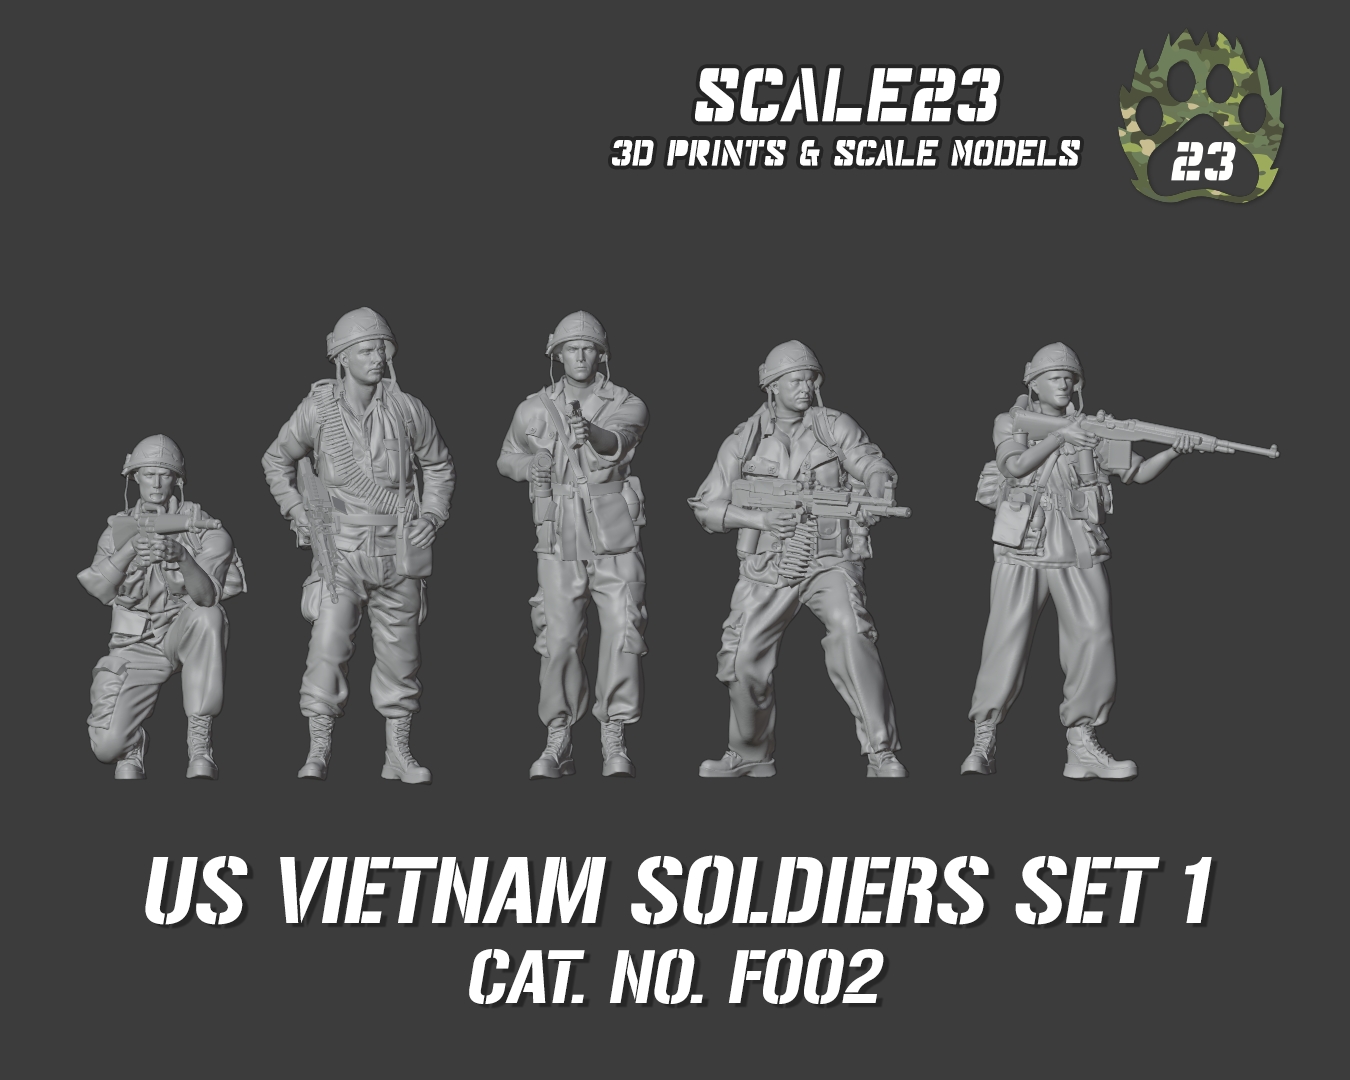 U.S. Vietnam soldiers - set 1